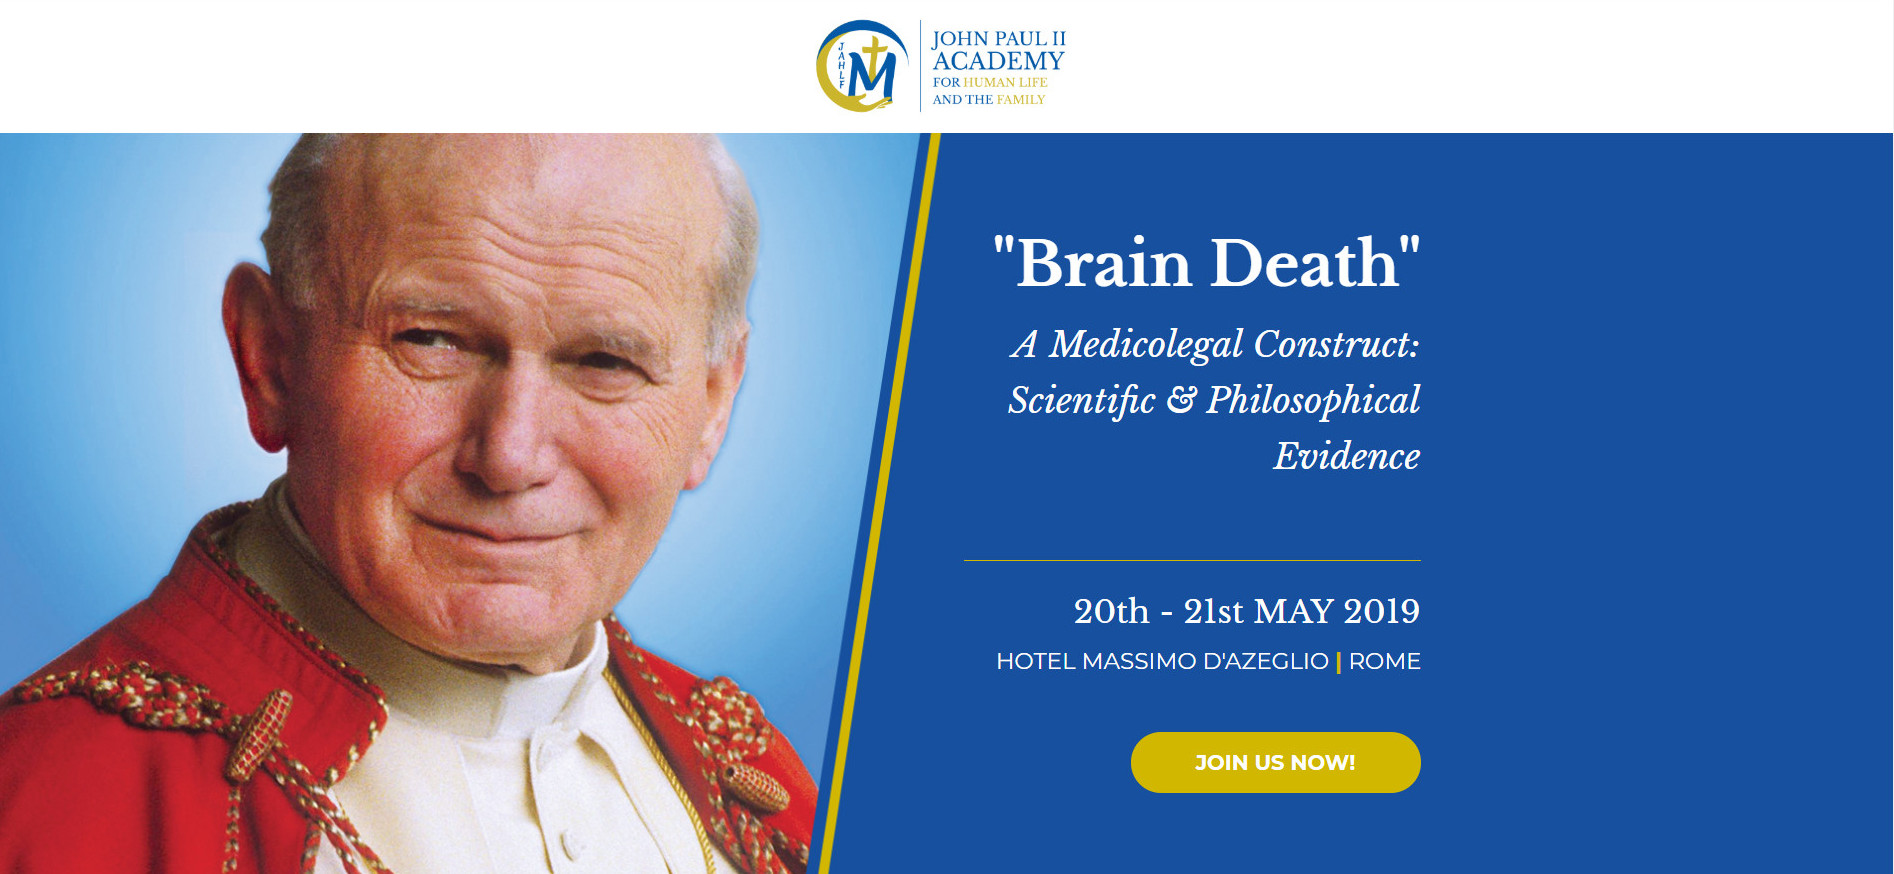 La Academia Juan Pablo II para la Vida Humana y la Familia celebrar en Roma un Congreso sobre Muerte cerebral